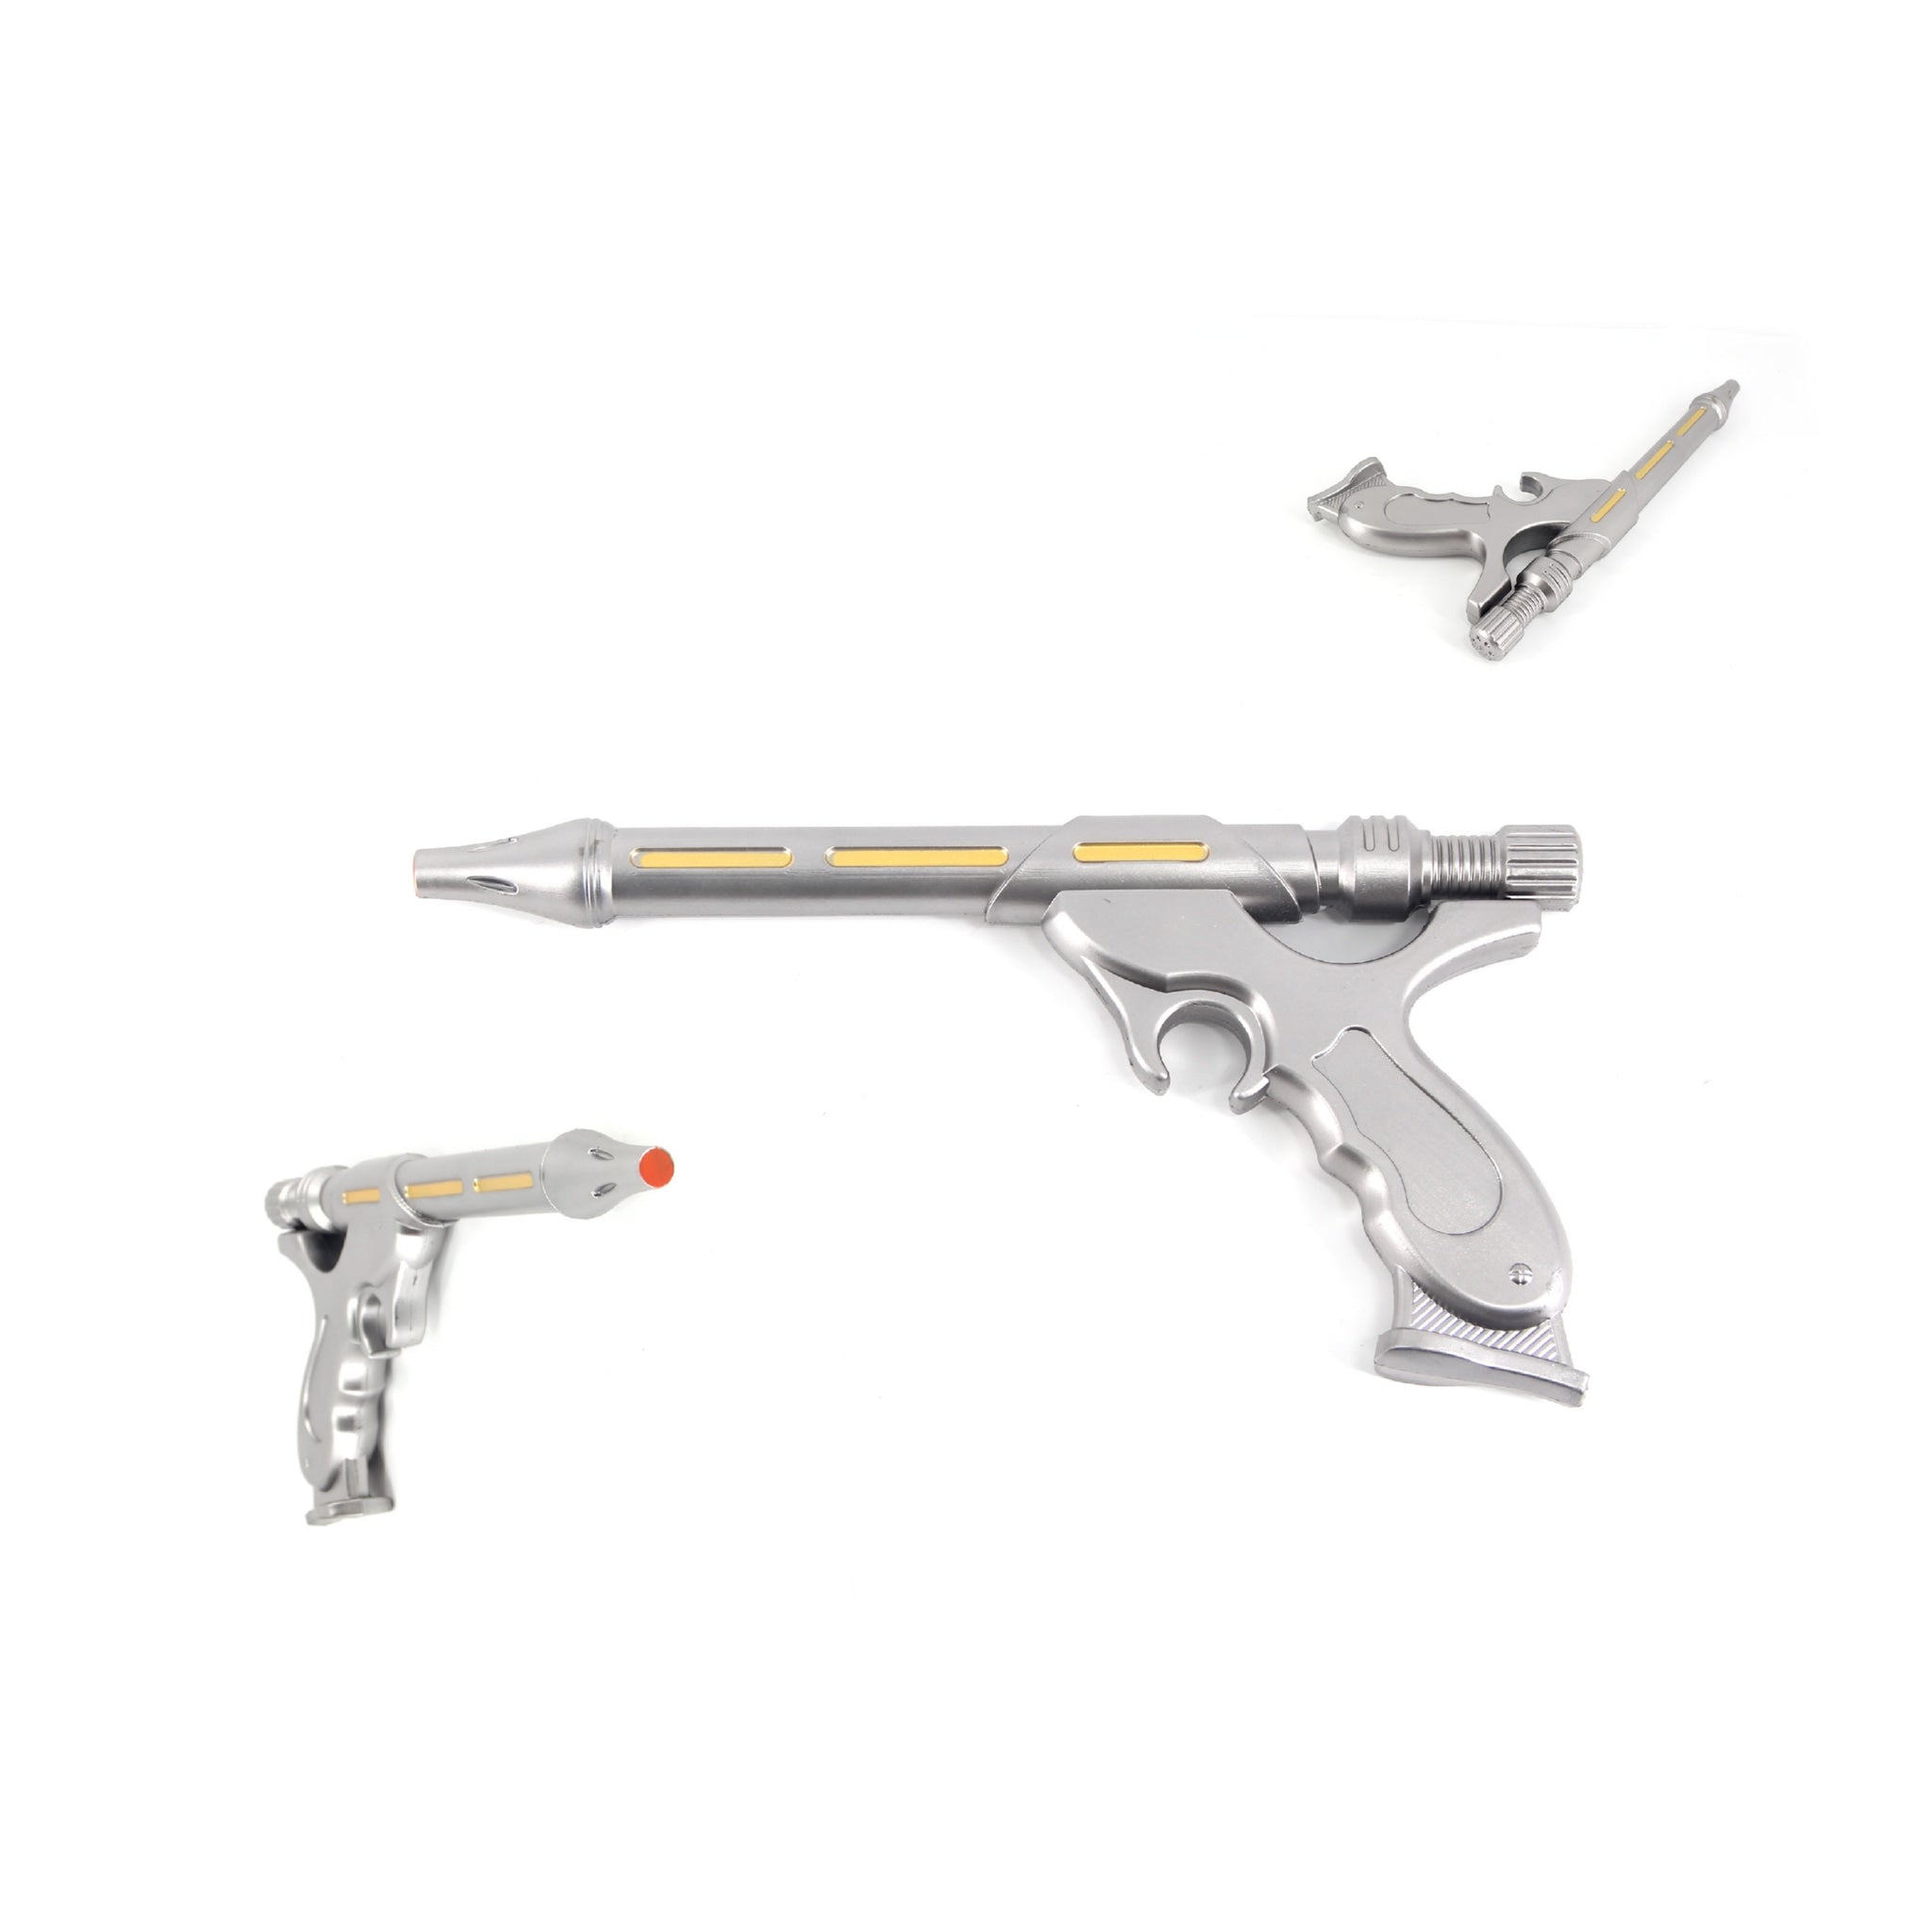 Star Wars Jango Fett Westar-34 Blaster Pistol PU Foam Cosplay Prop Replica